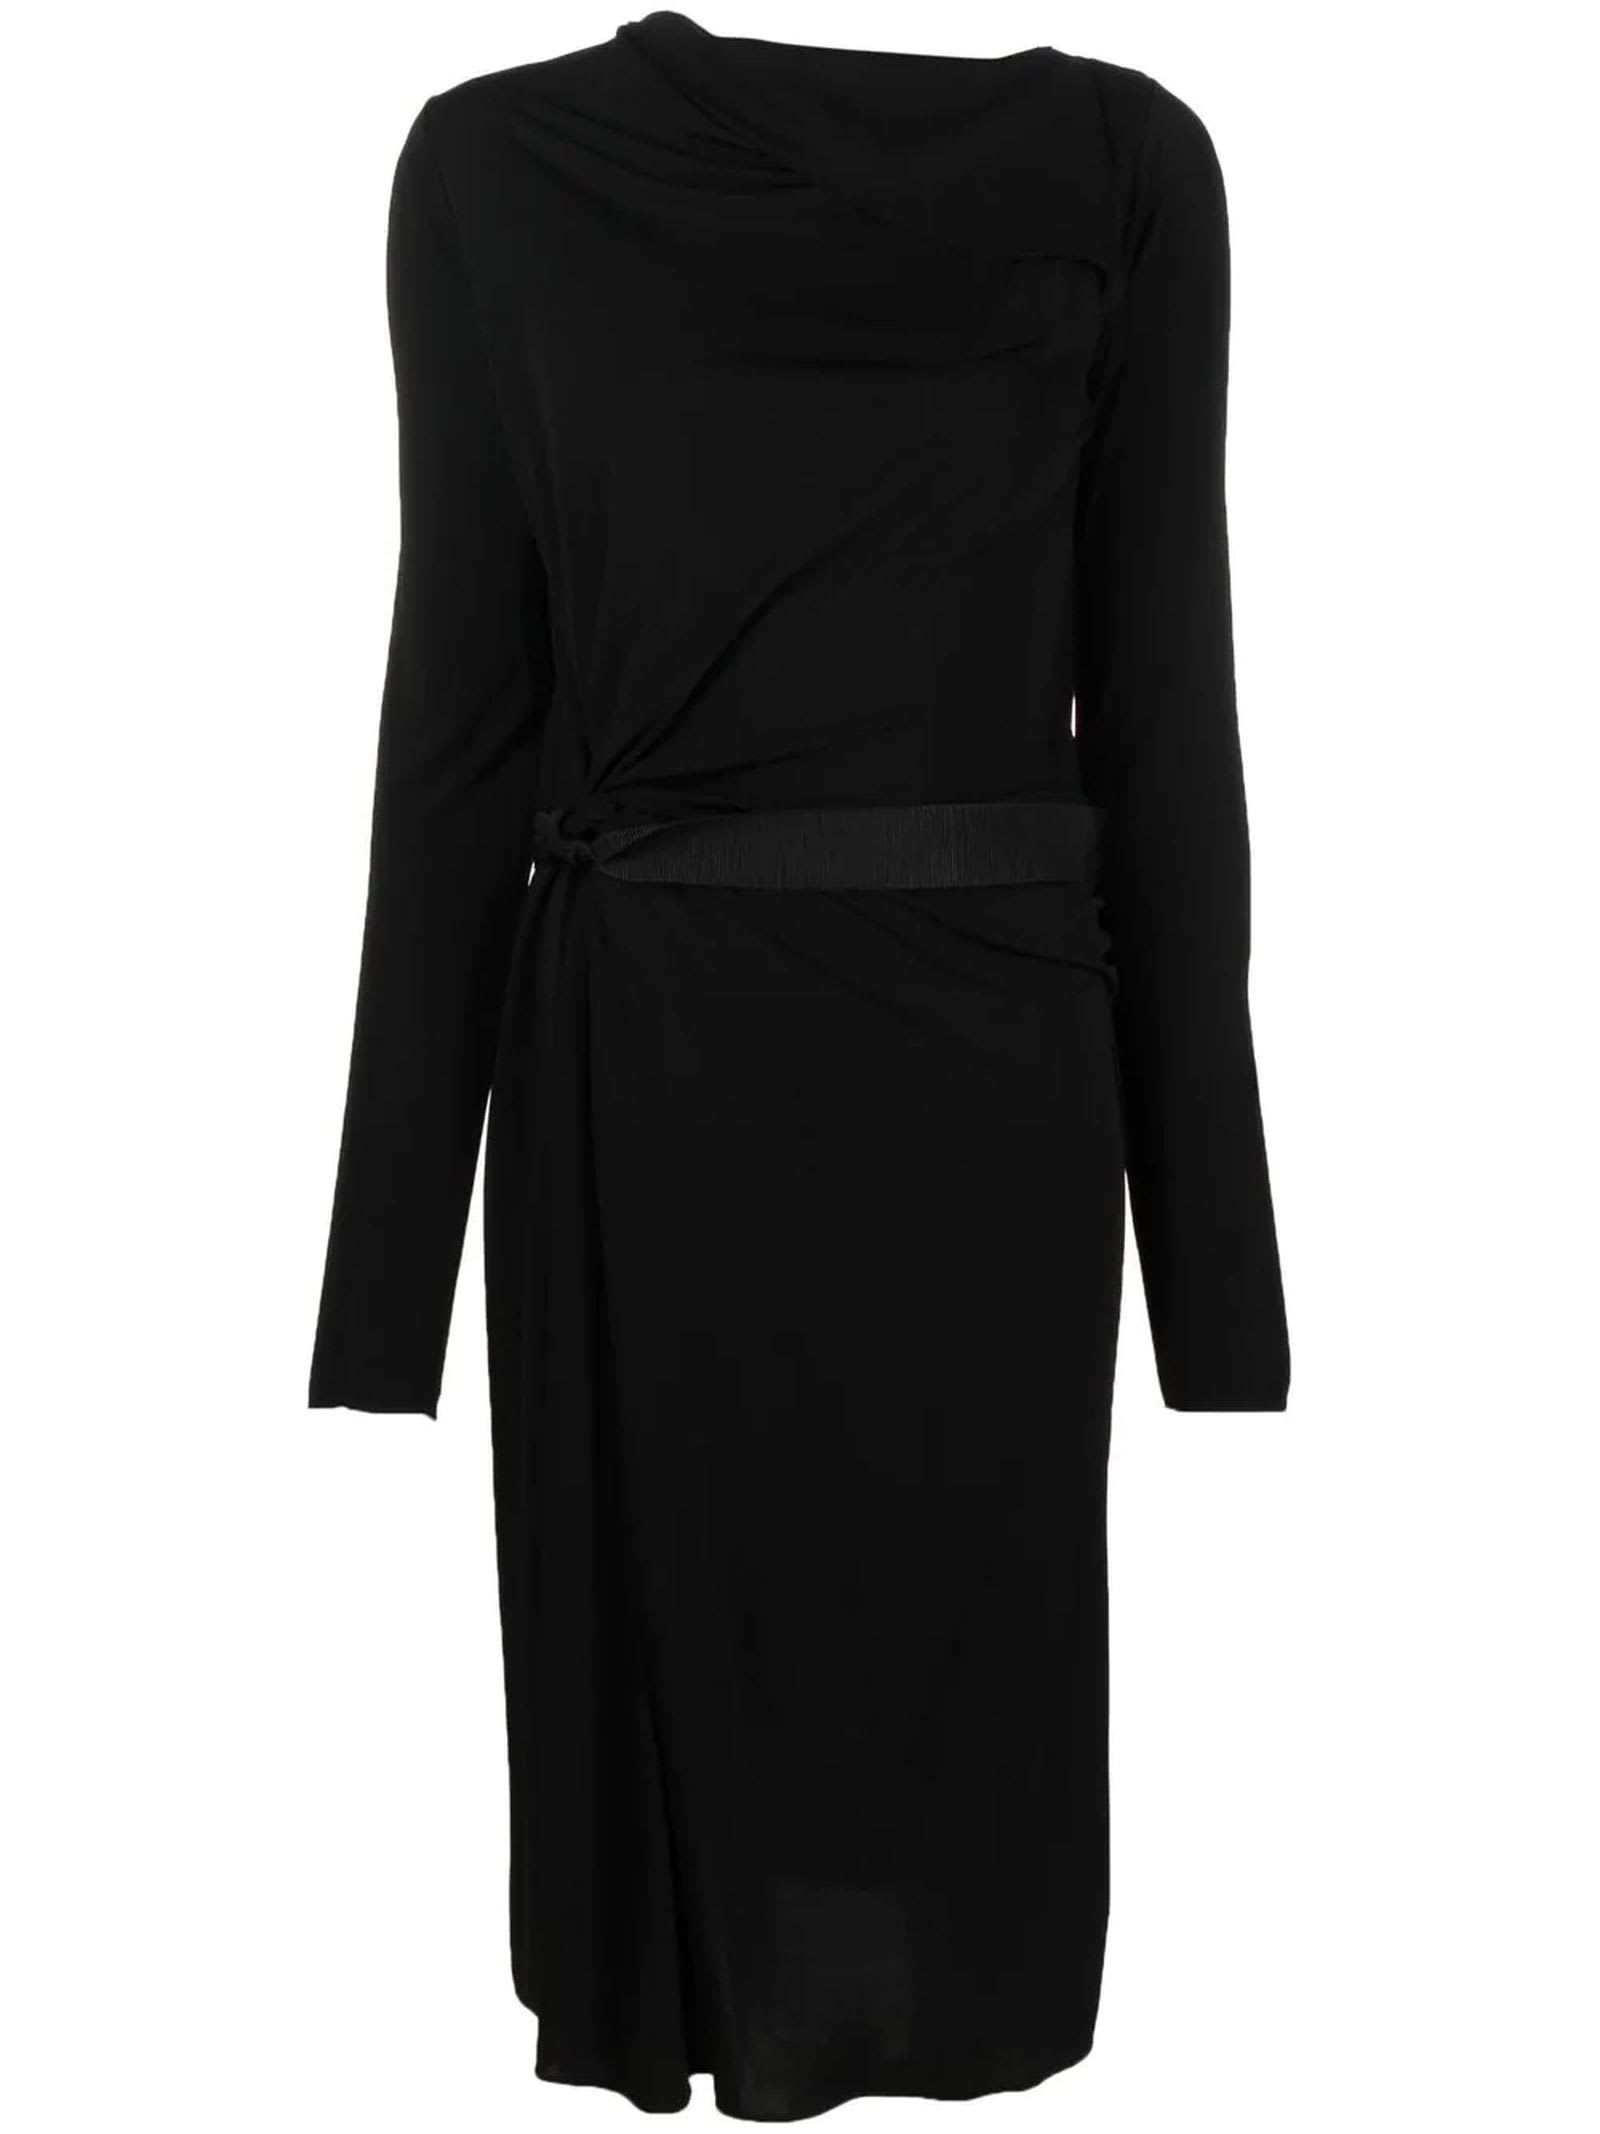 Lanvin Black Belted Dress